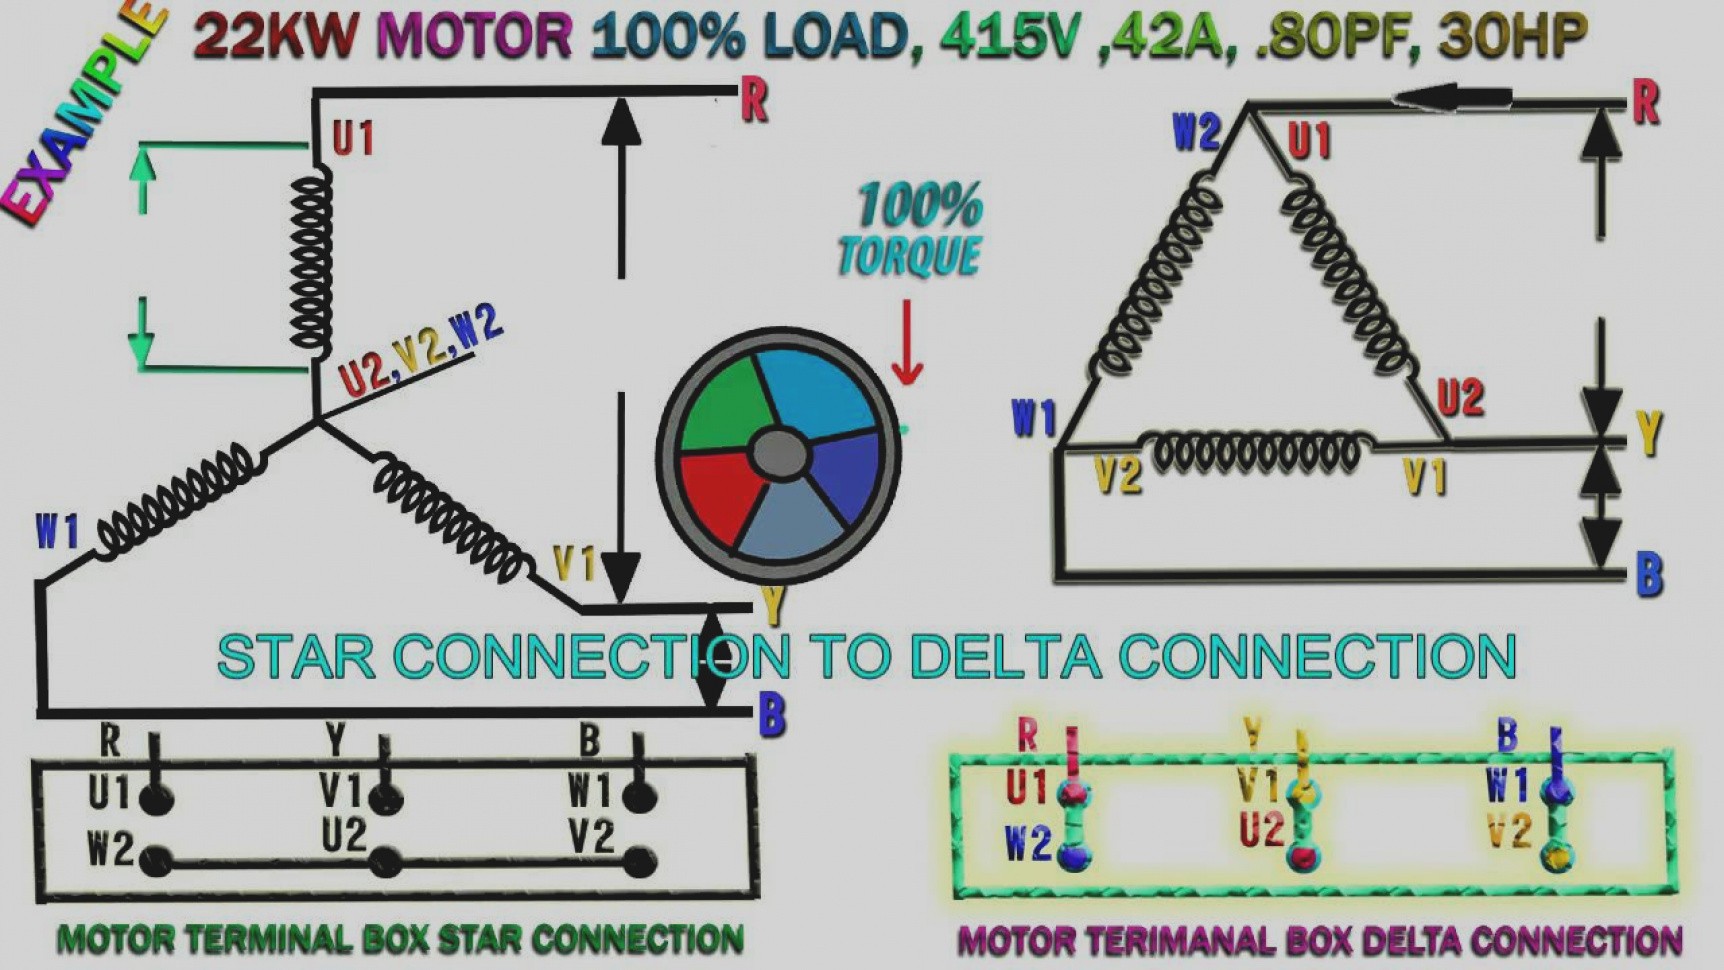 Amazing 3ph Motor Wiring Diagram 230V 3 Phase At 208V Webtor Me